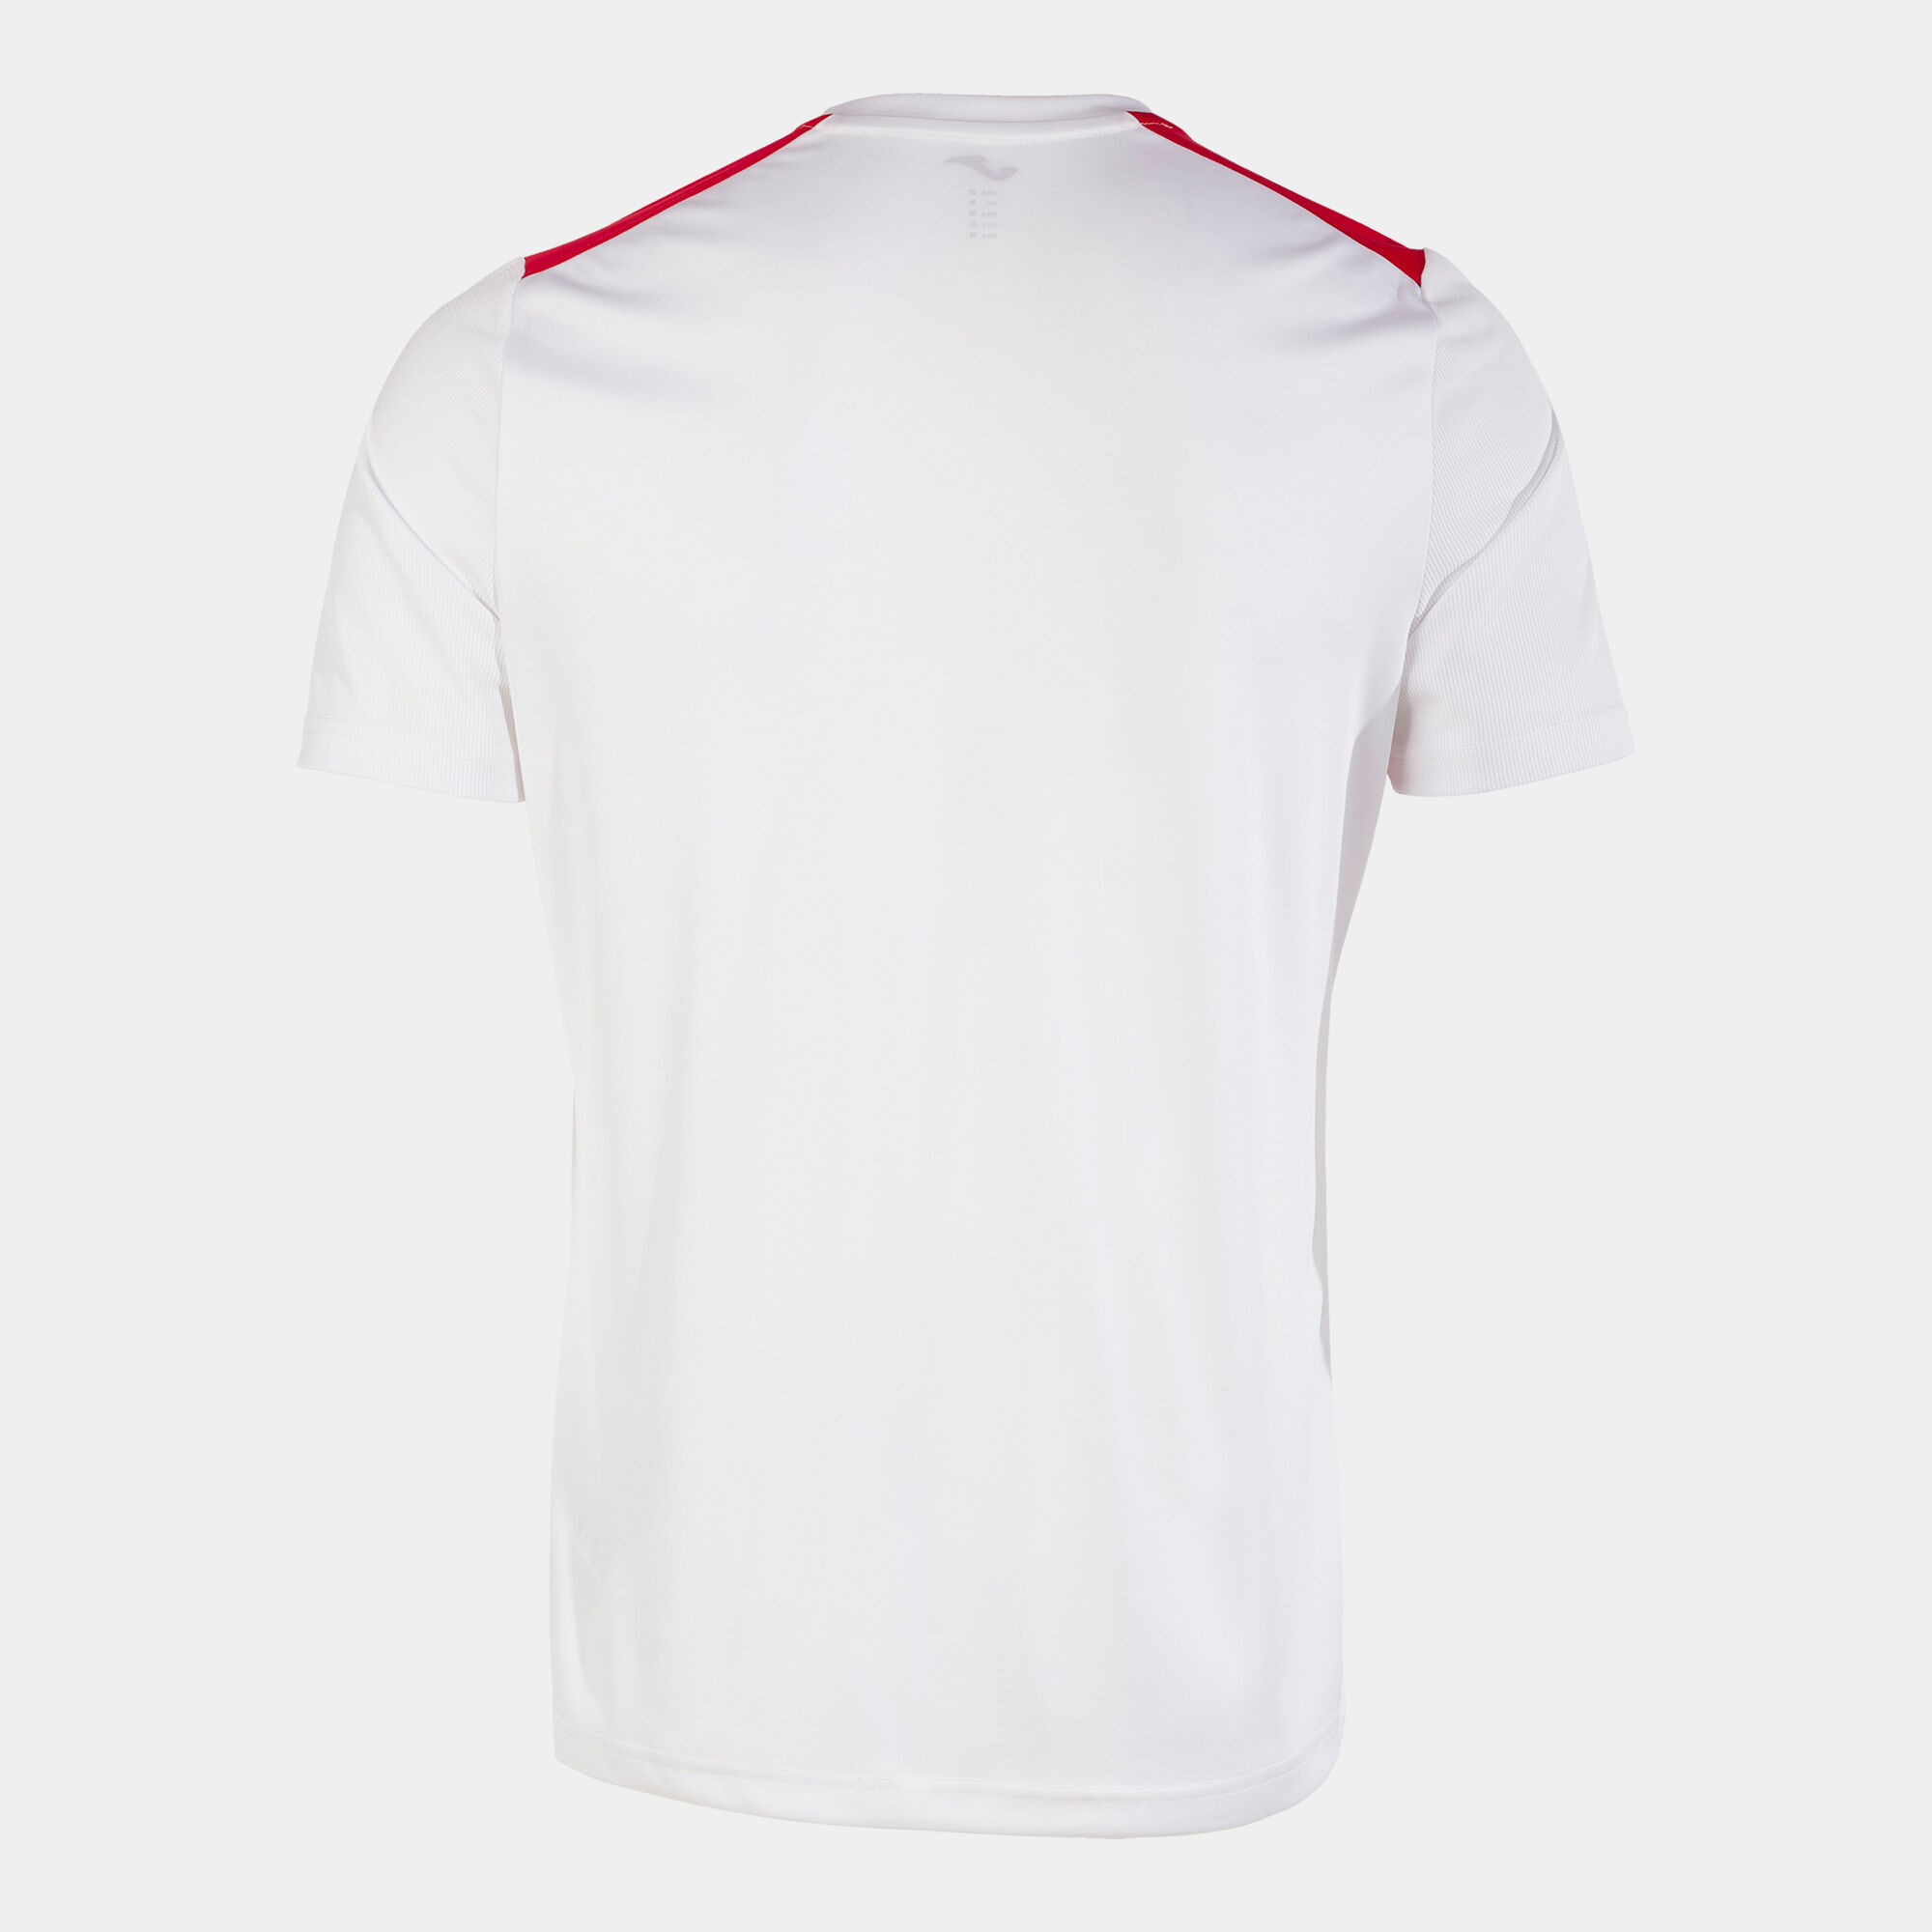 Koszulka z krótkim rękawem mężczyźni Championship VII bialy czerwony